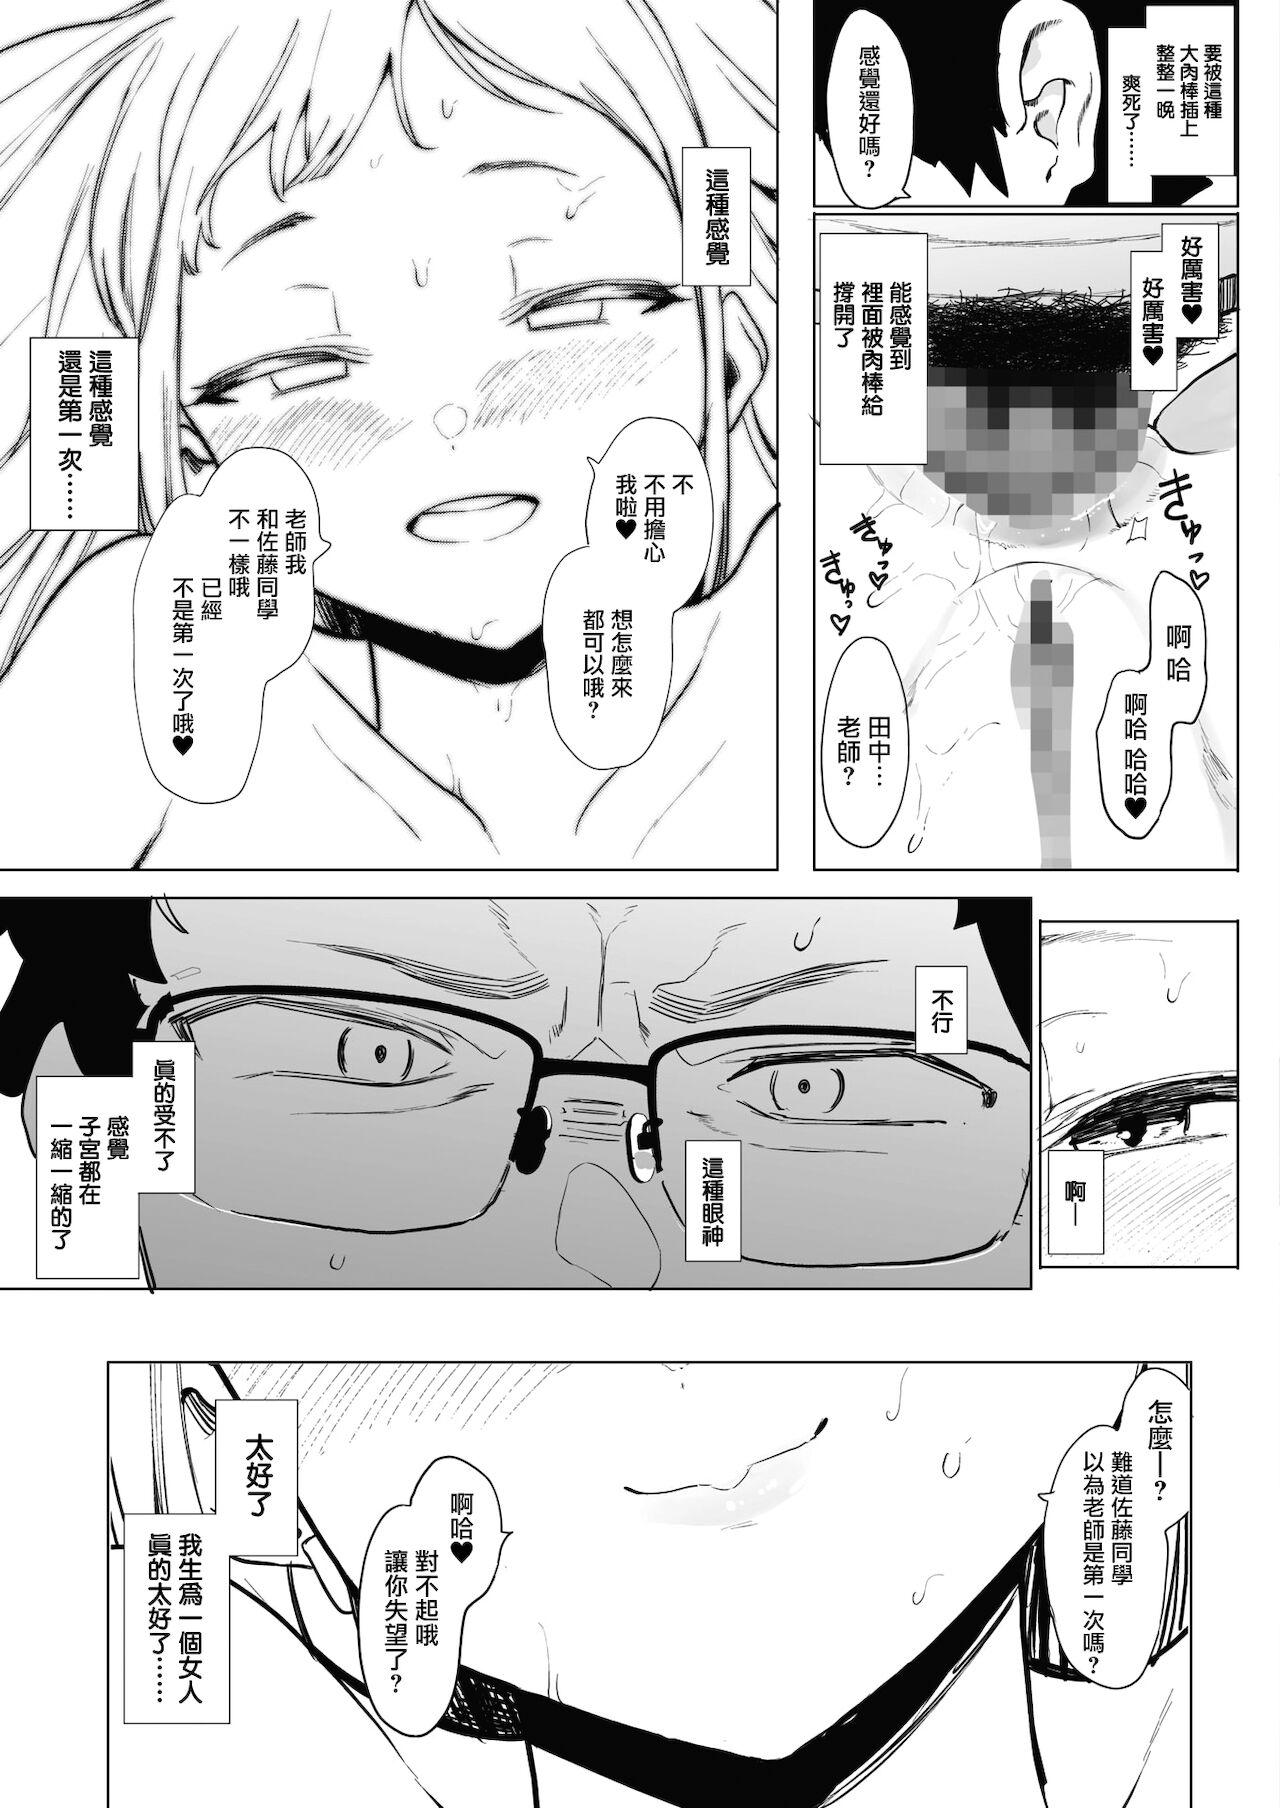 EIGHTMANsensei no okage de Kanojo ga dekimashita! 2 | I Got a Girlfriend with Eightman-sensei's Help! 2 26